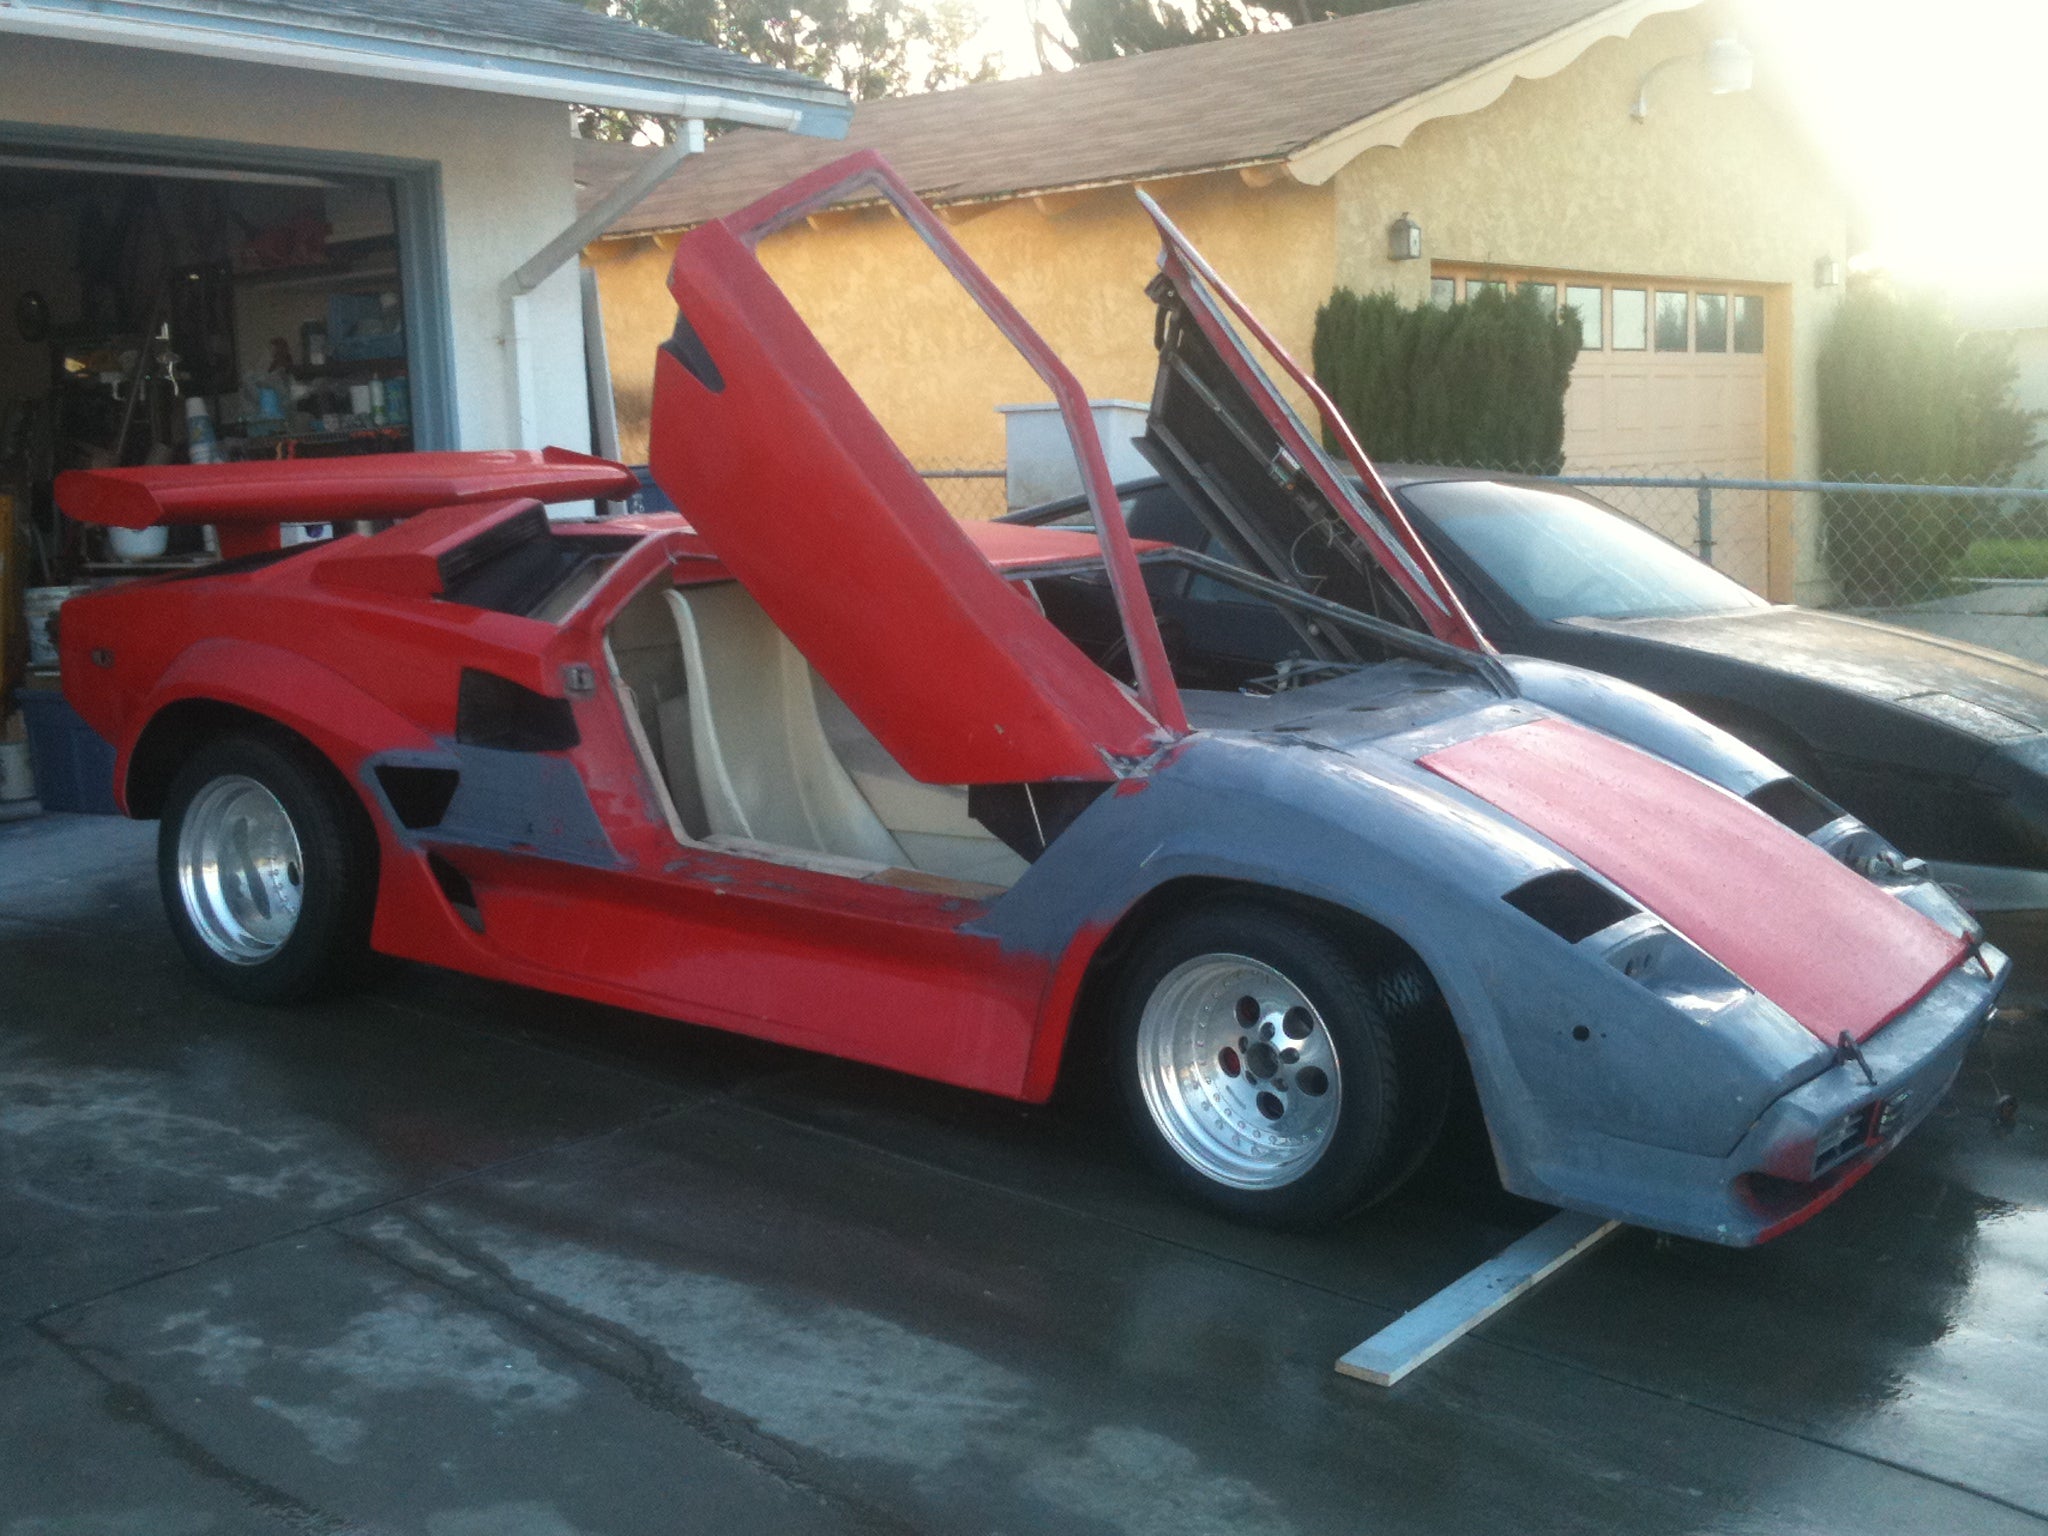 Ryan Johnson's 1990's Lamborghini kit project.